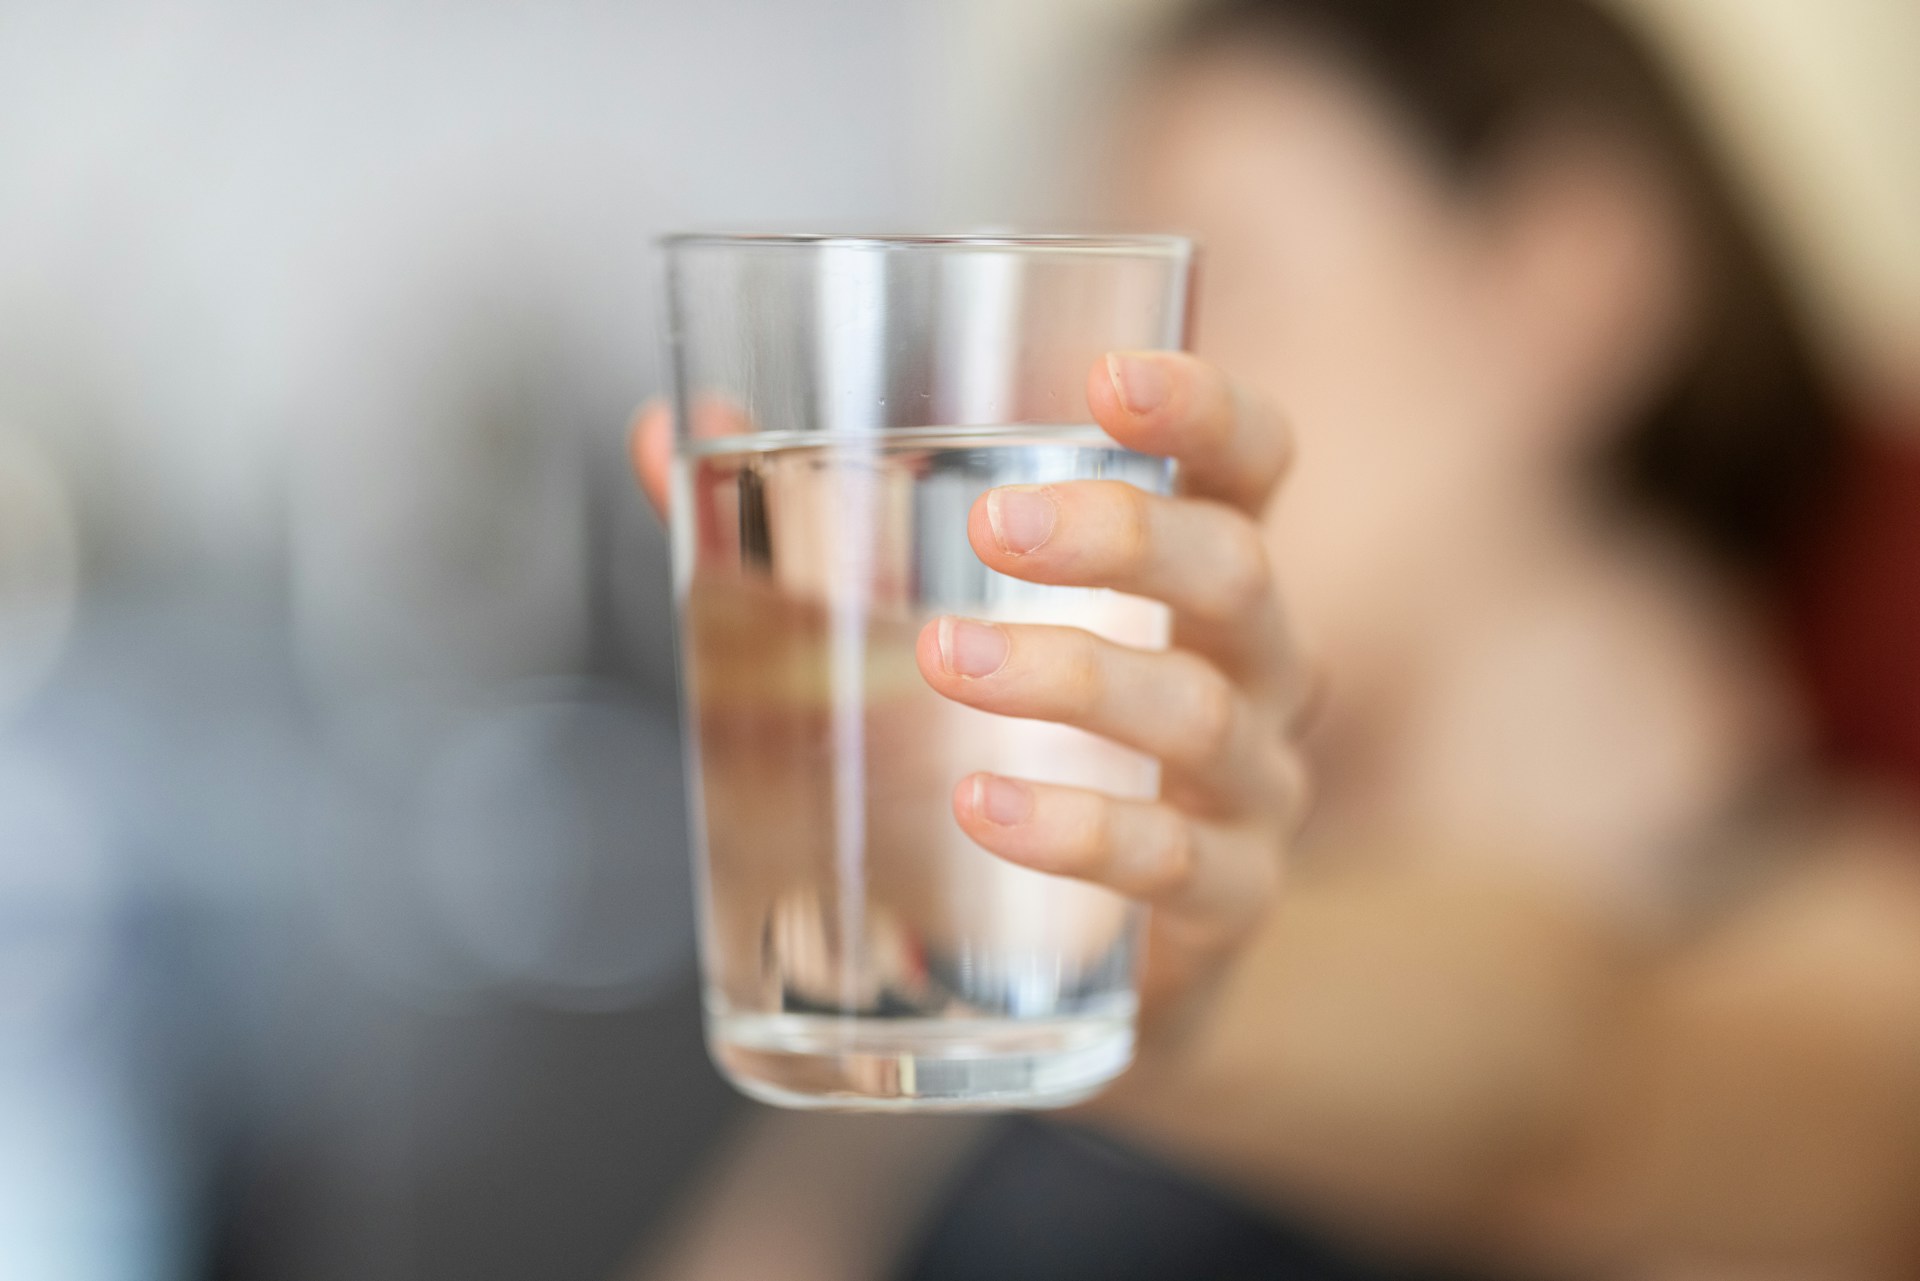 Ce qui arrive au corps quand on ne boit pas assez : les signes de déshydratation.